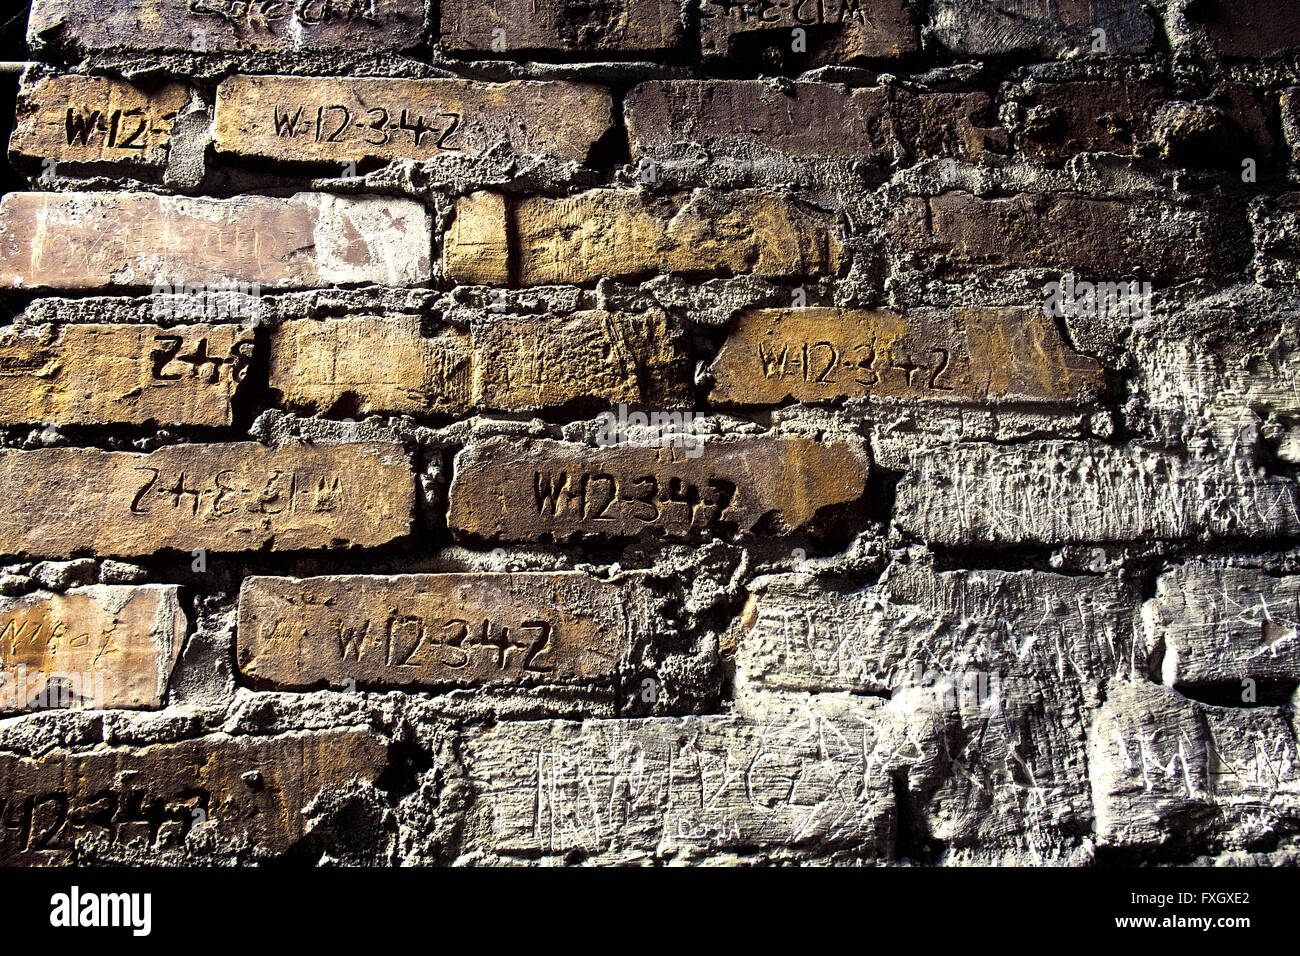 Inside Auschwitz-Birkenau, Poland, engraved prisoner numbers in the brickwork Stock Photo